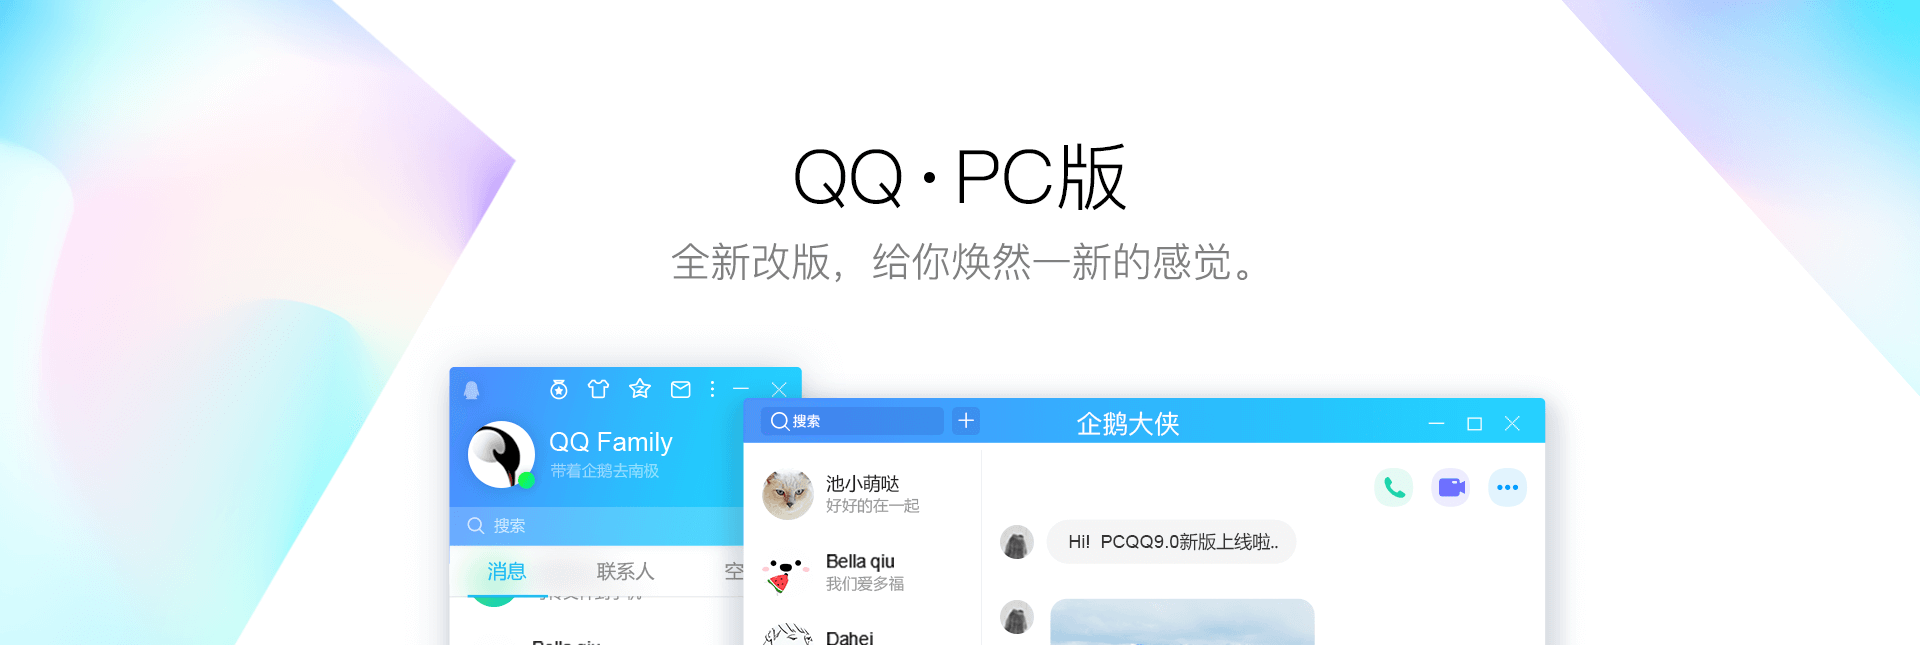 腾讯QQ v9.3.3(27011) 官方正式版